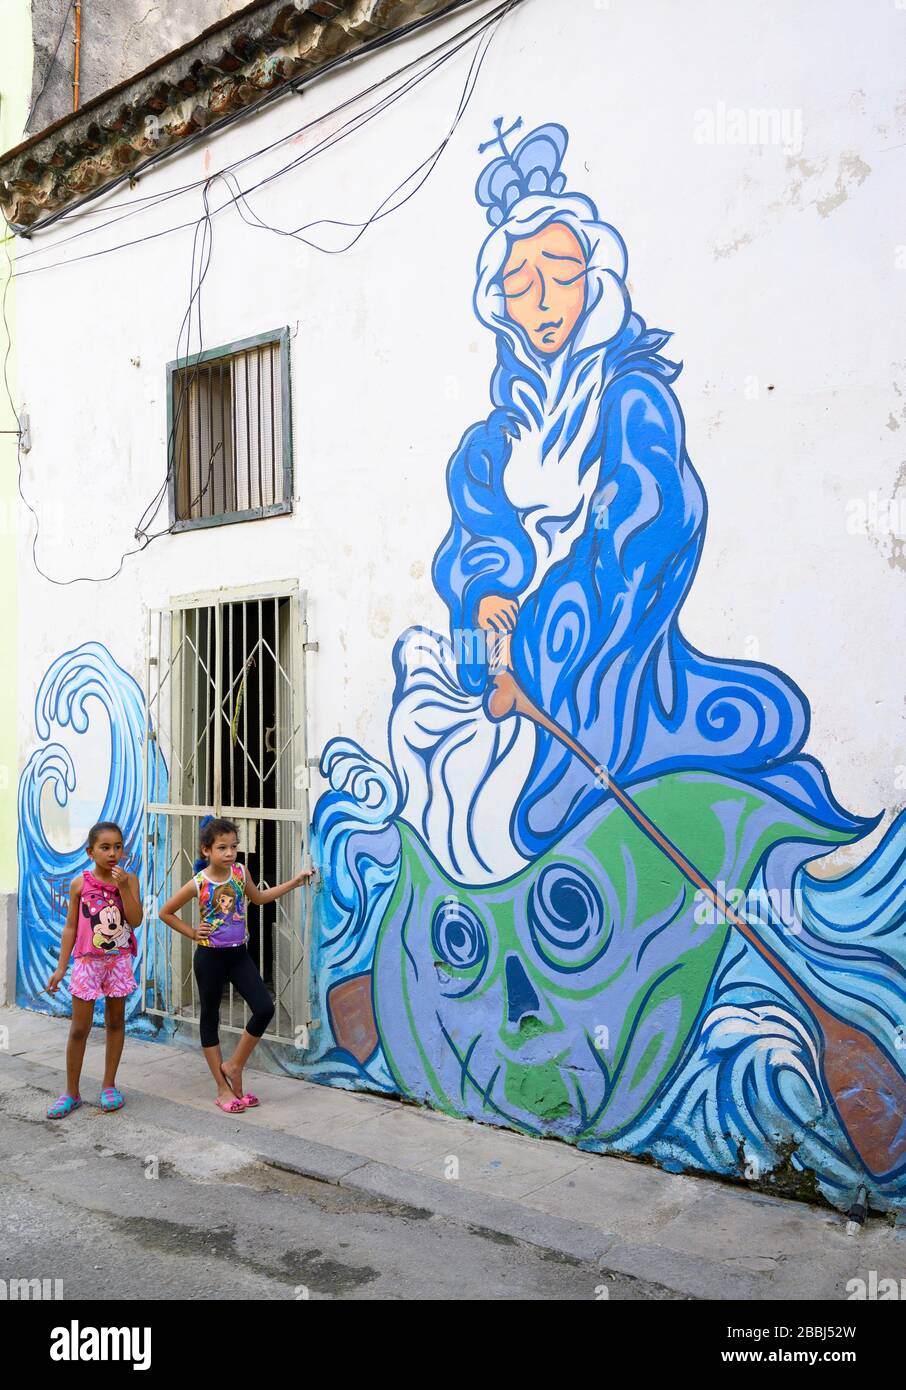 Deux jeunes filles et l'art mural, la Havane Vieja, Cuba Banque D'Images